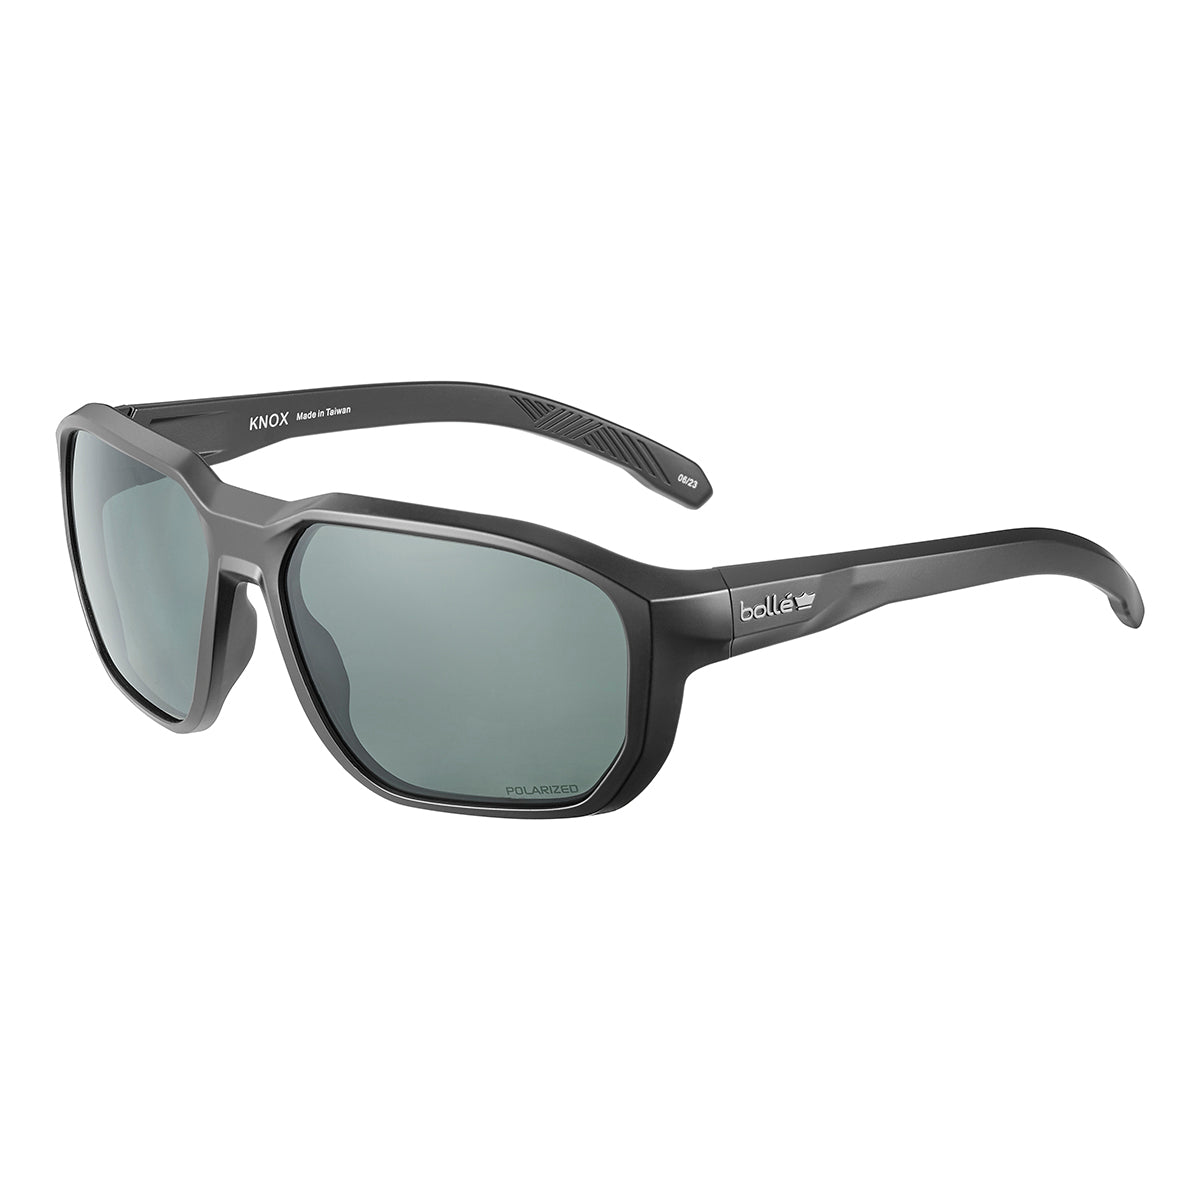 Bolle KNOX Polarized Lifestyle Sunglasses